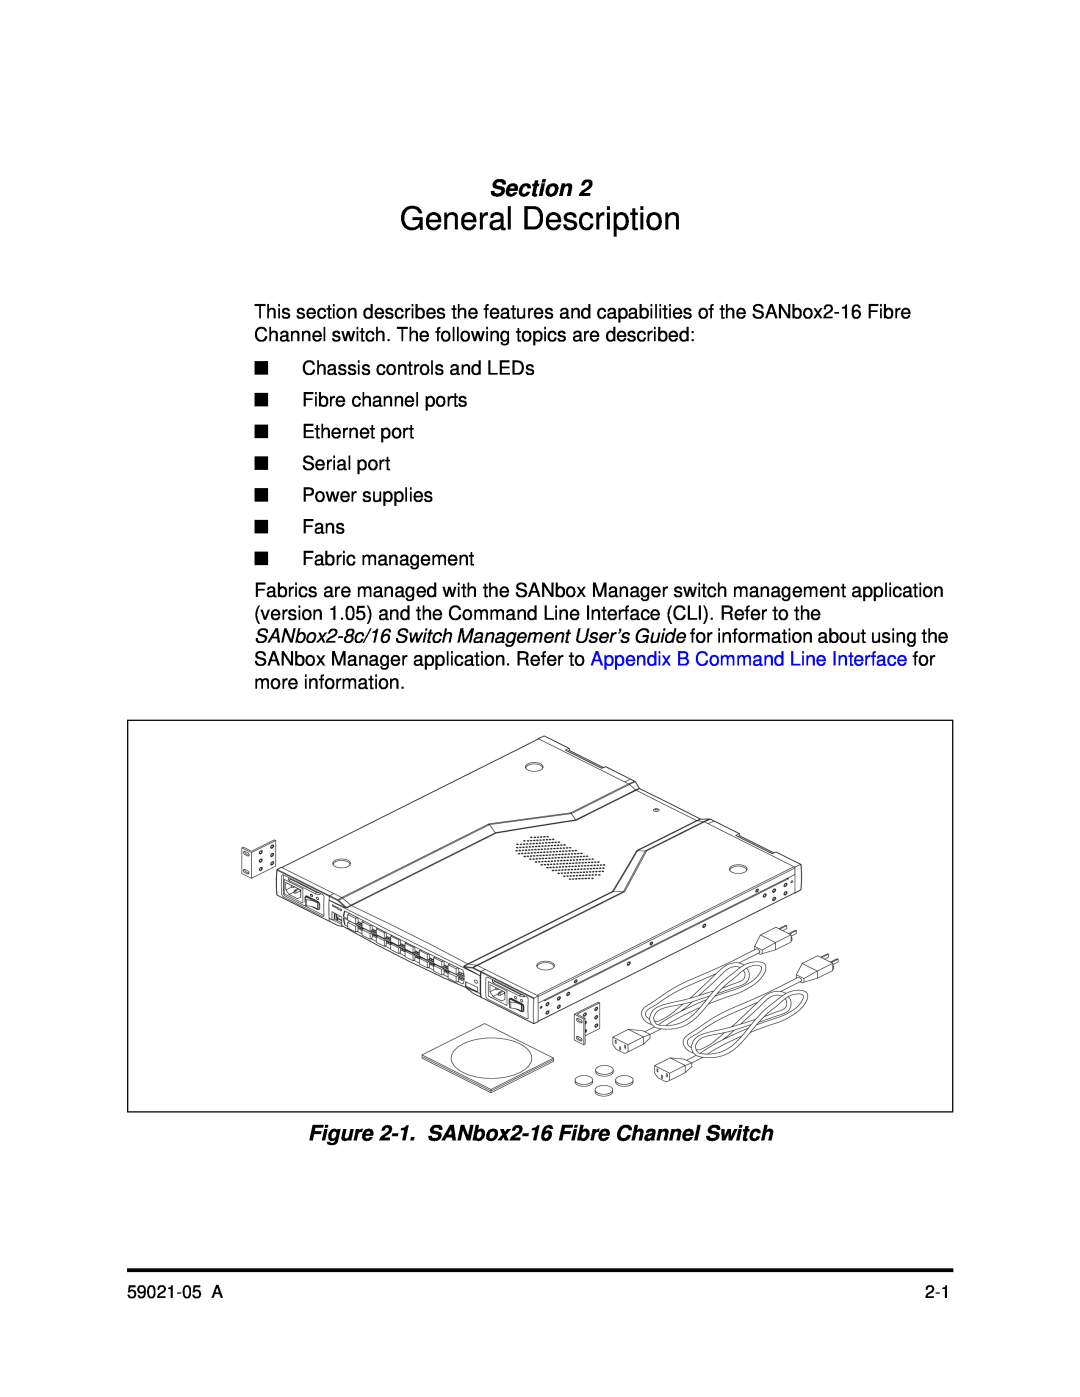 Q-Logic 59021-05 manual General Description, 1. SANbox2-16 Fibre Channel Switch, Section 